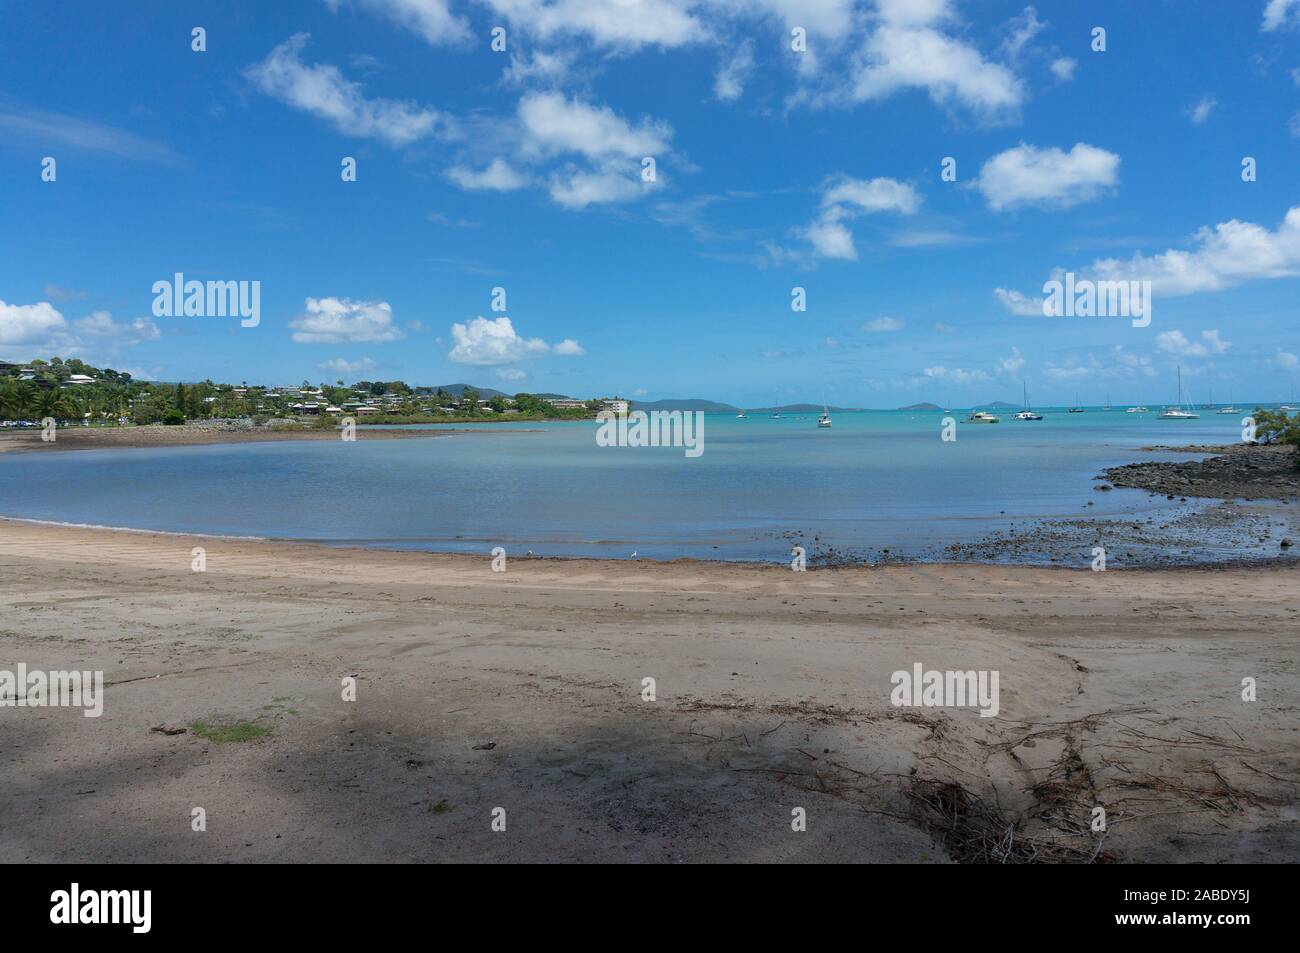 Airlie Beach sur journée ensoleillée avec de l'eau bleu turquoise. Queensland, Australie Banque D'Images